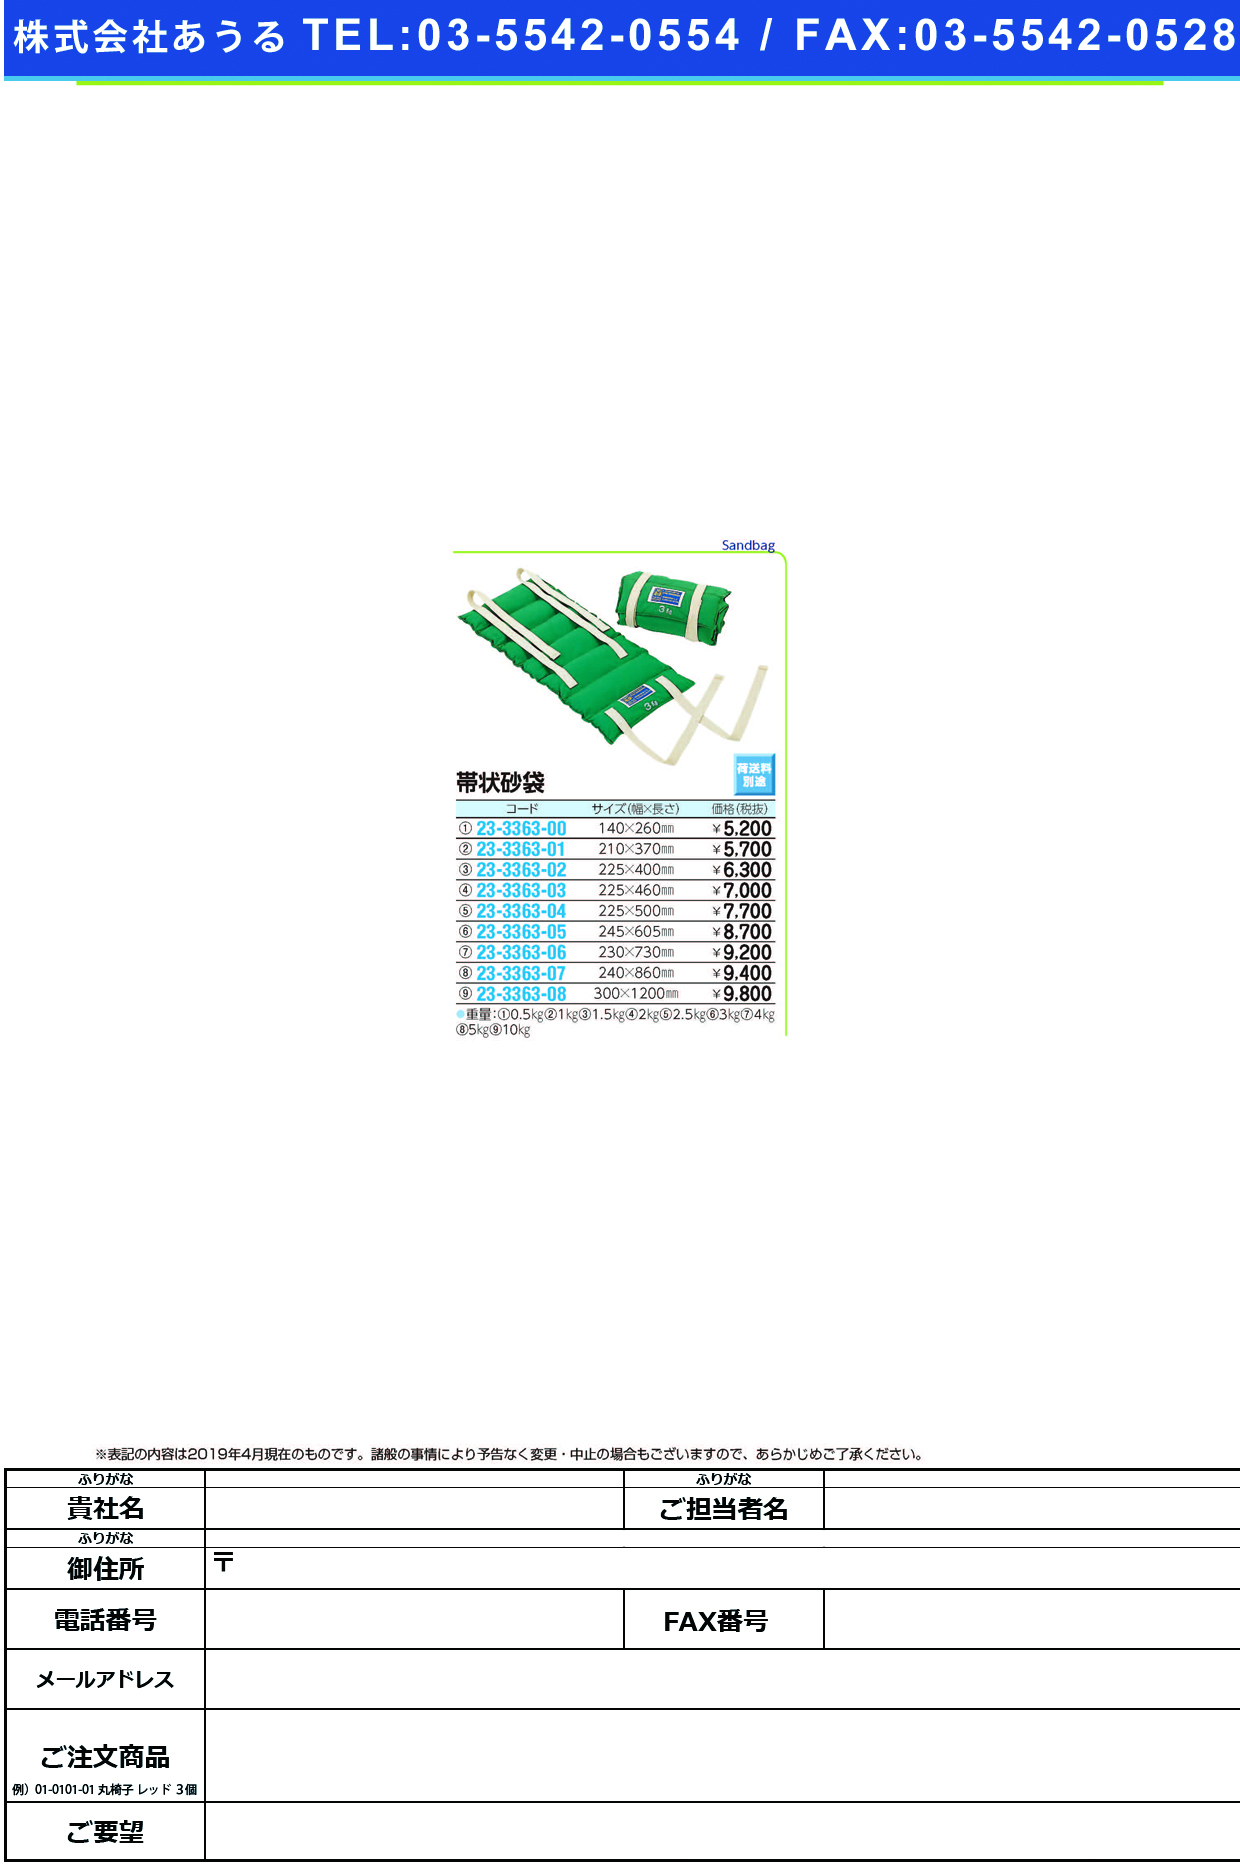 (23-3363-05)帯状砂袋 R-526(3.0KG) ｵﾋﾞｼﾞｮｳｽﾅﾌﾞｸﾛ【1個単位】【2019年カタログ商品】